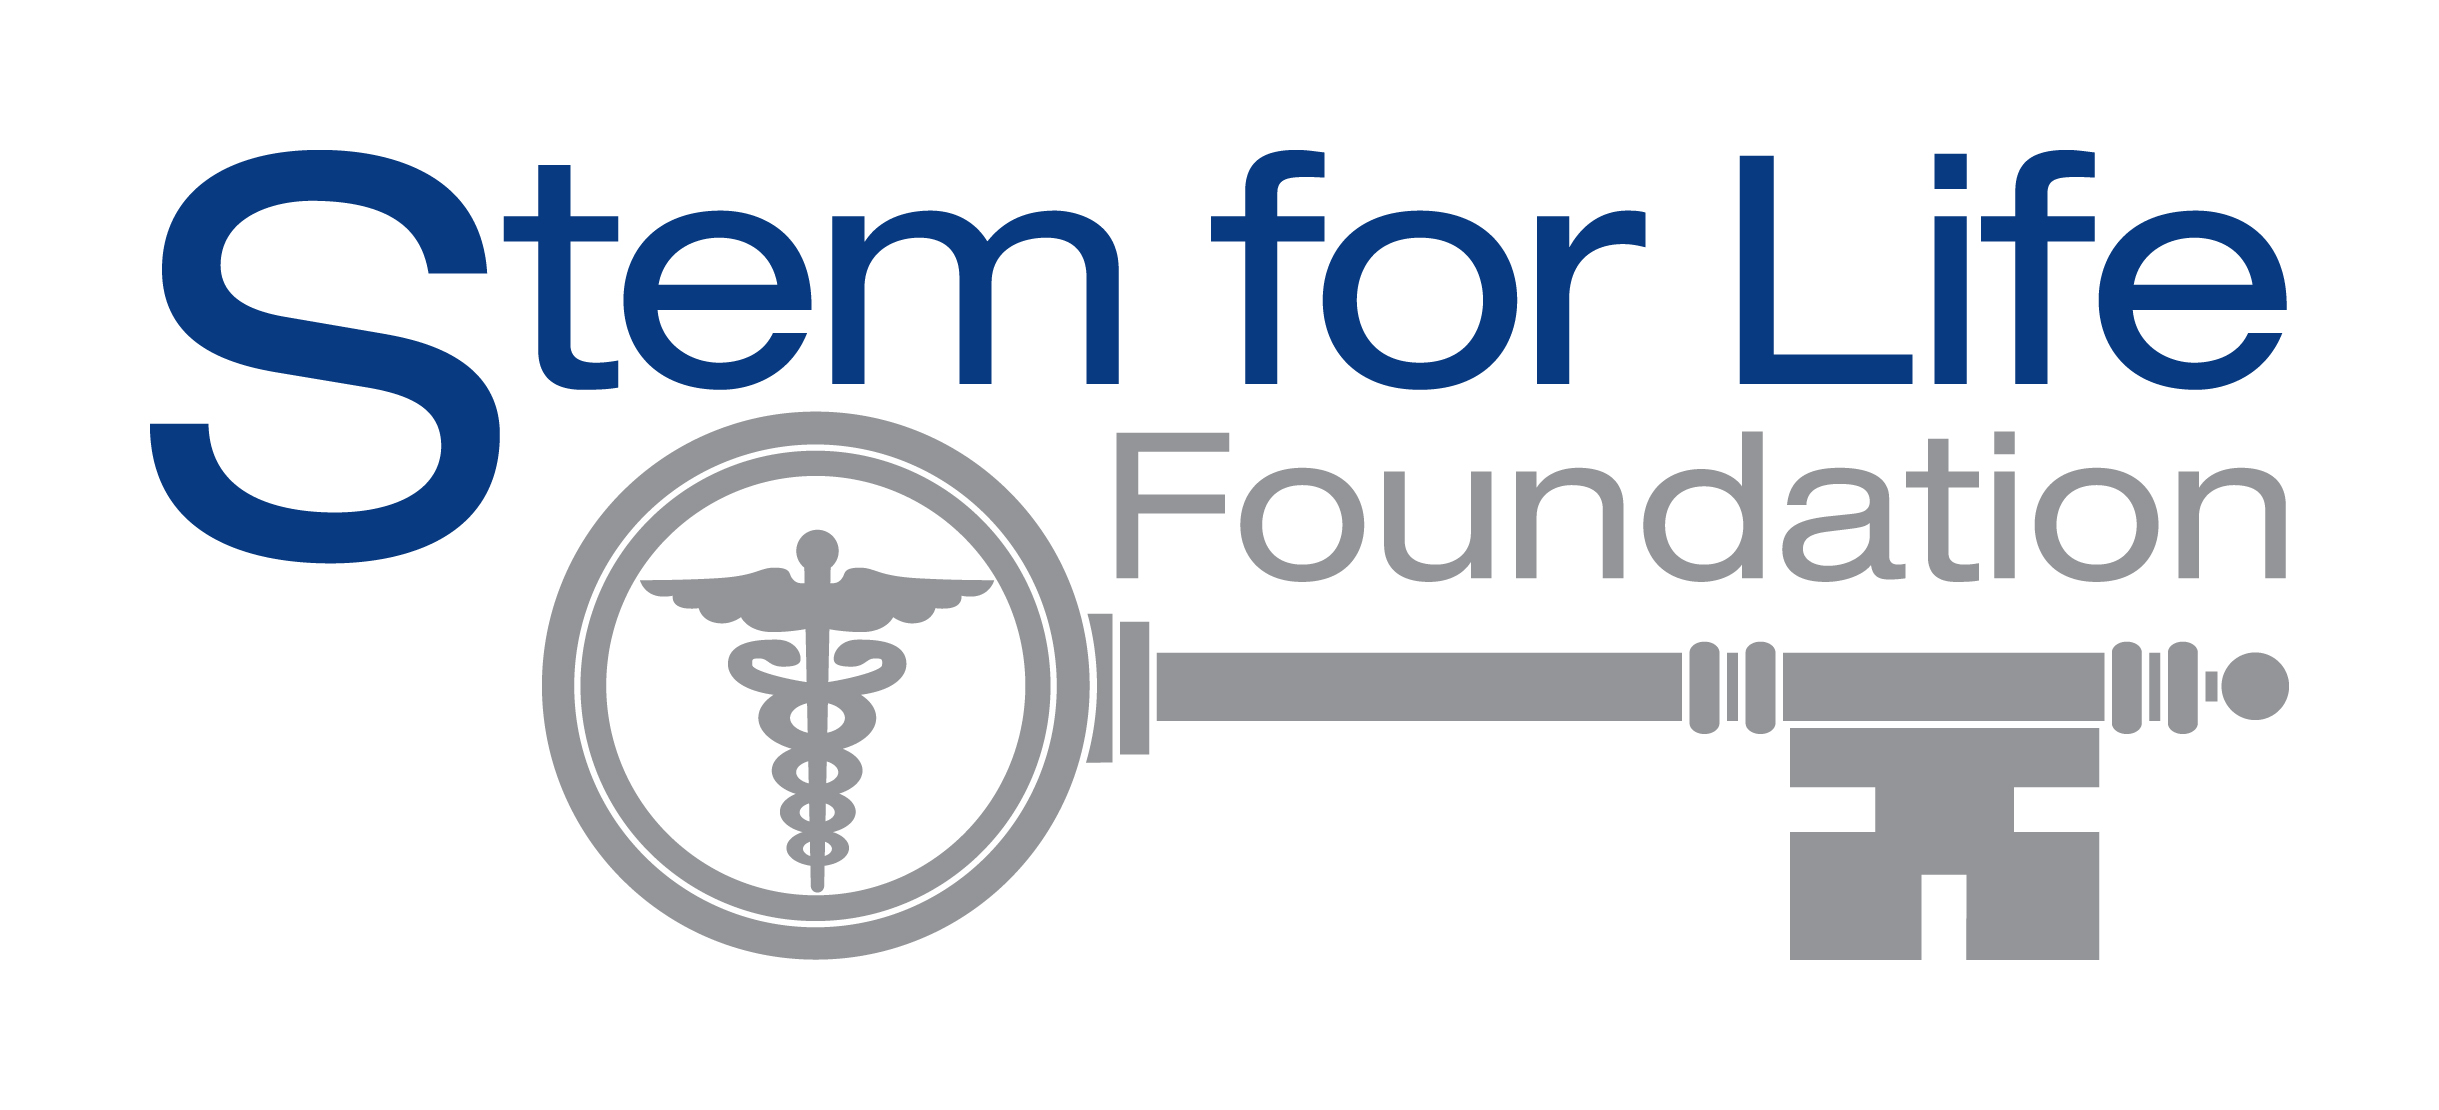 The Stem for Life Foundation logo